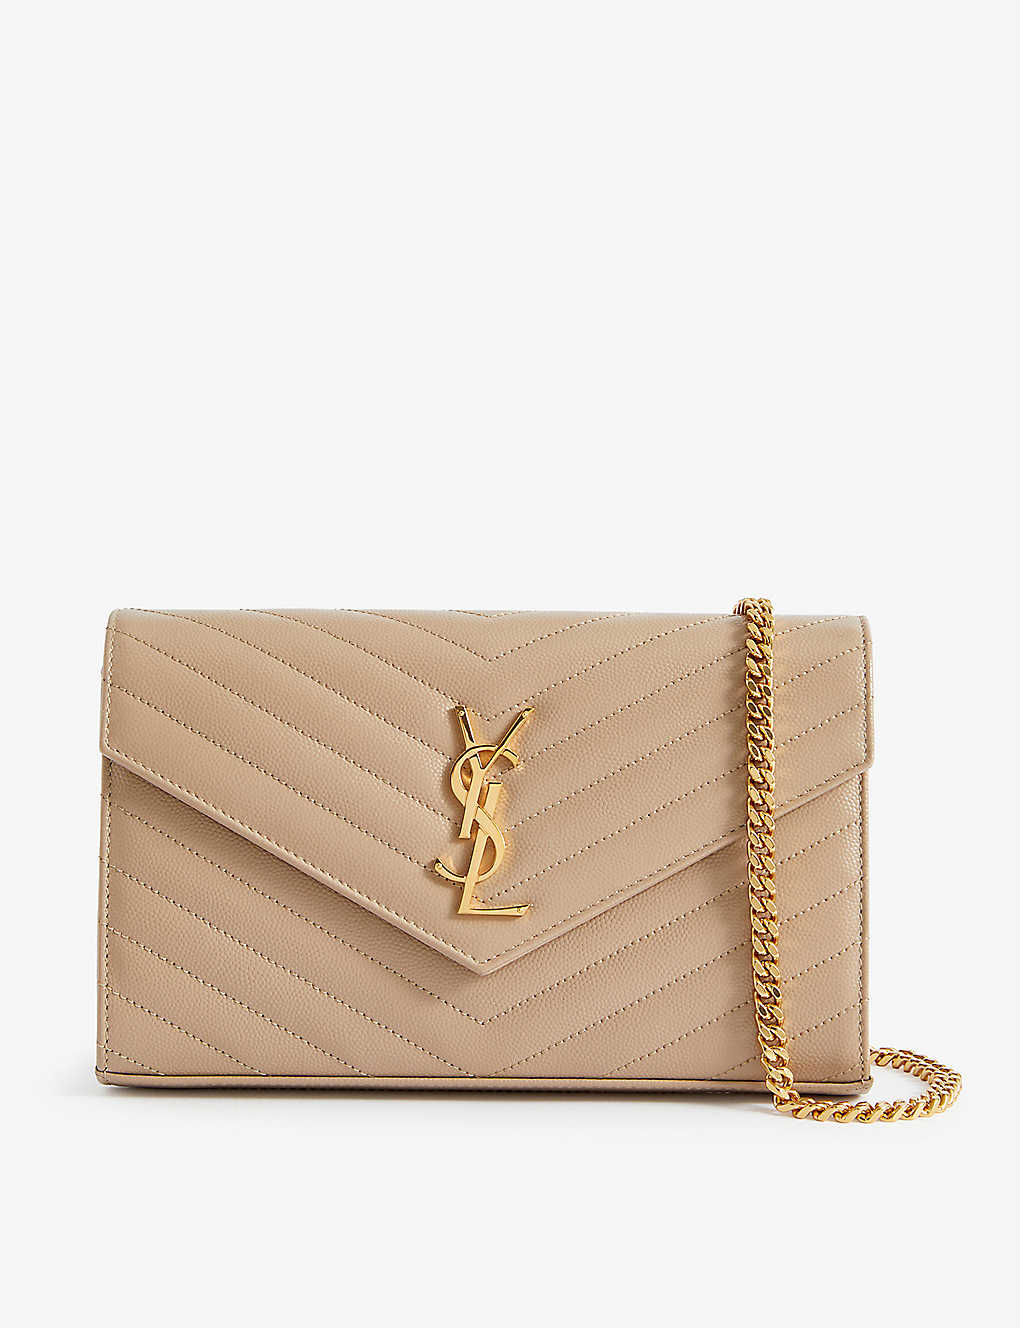 Authentic YSL Saint Laurent tan gold zipper wallet - Depop